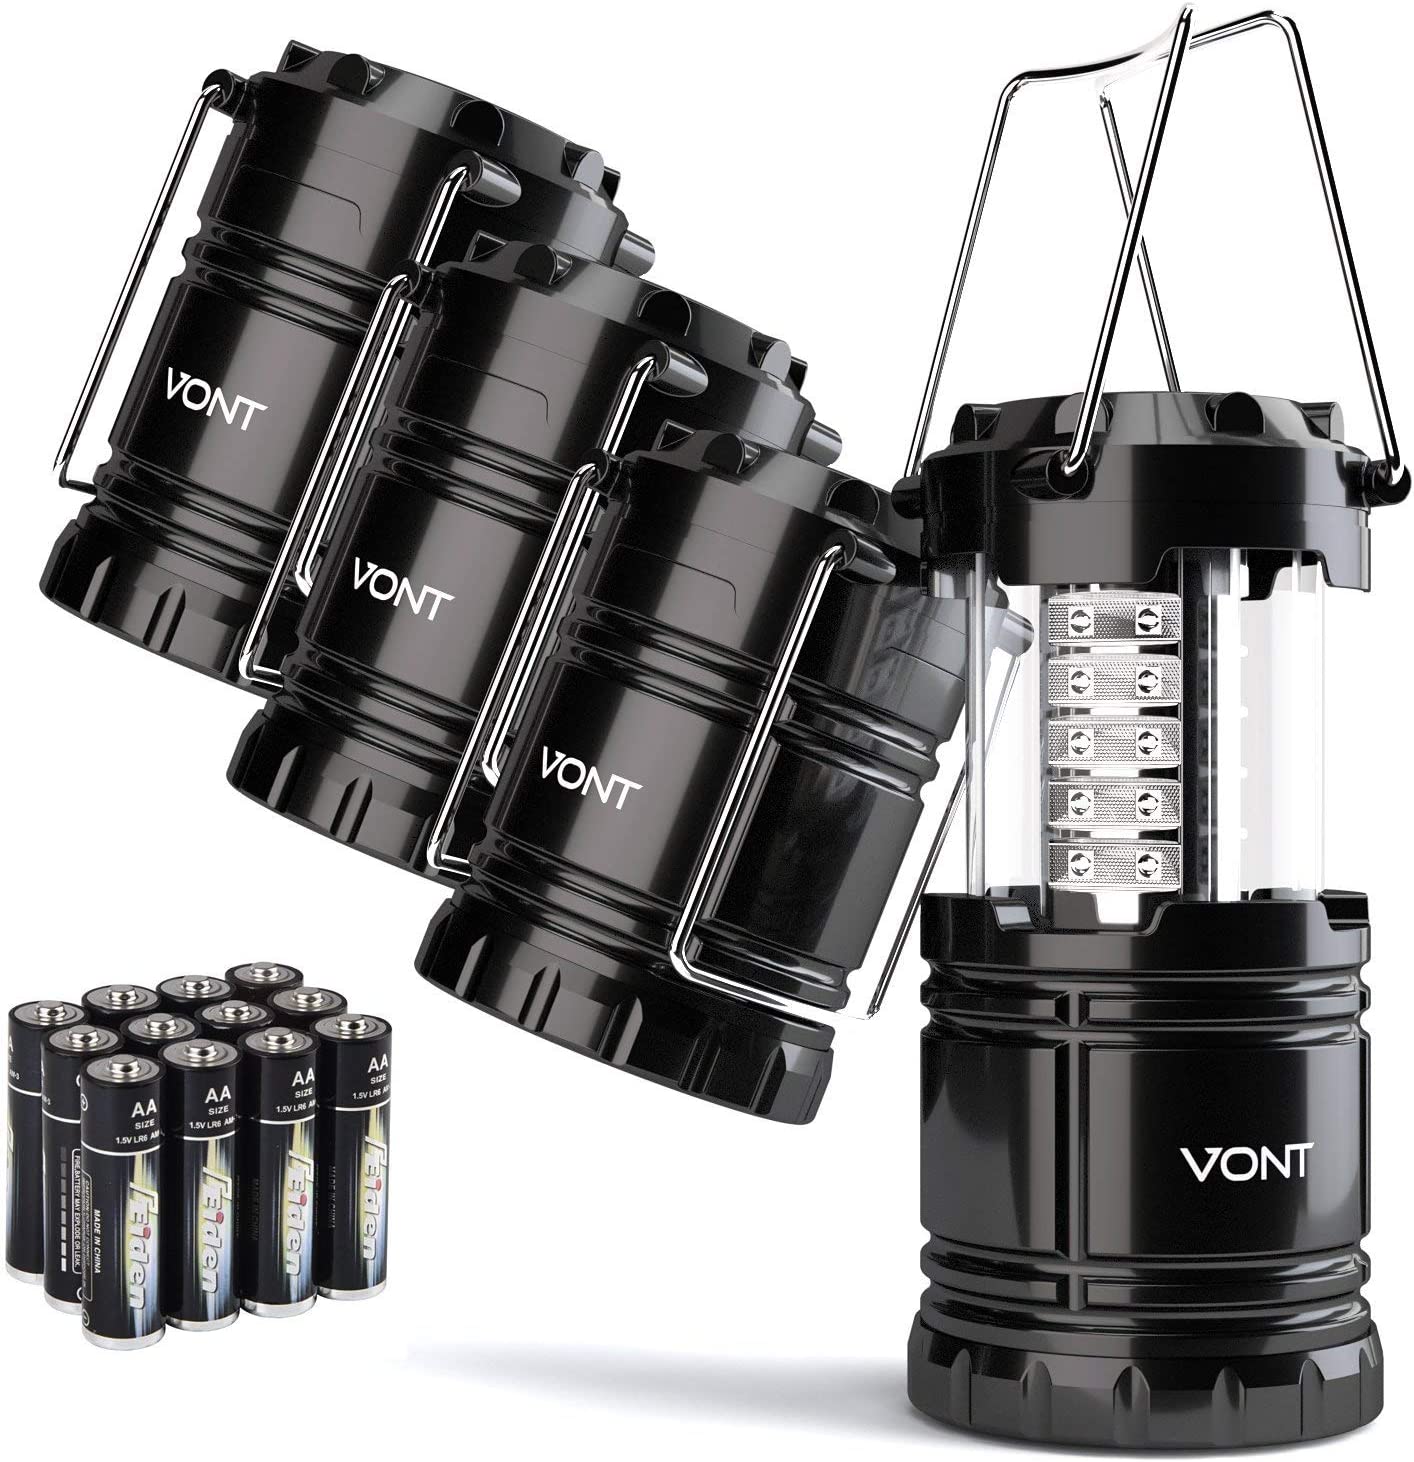 【美國代購】Vont 4 件組 LED露營燈,LED燈,適用於颶風求生包,風暴與停電緊急照明，戶外便攜式提燈,黑色,可折疊,(含電池)